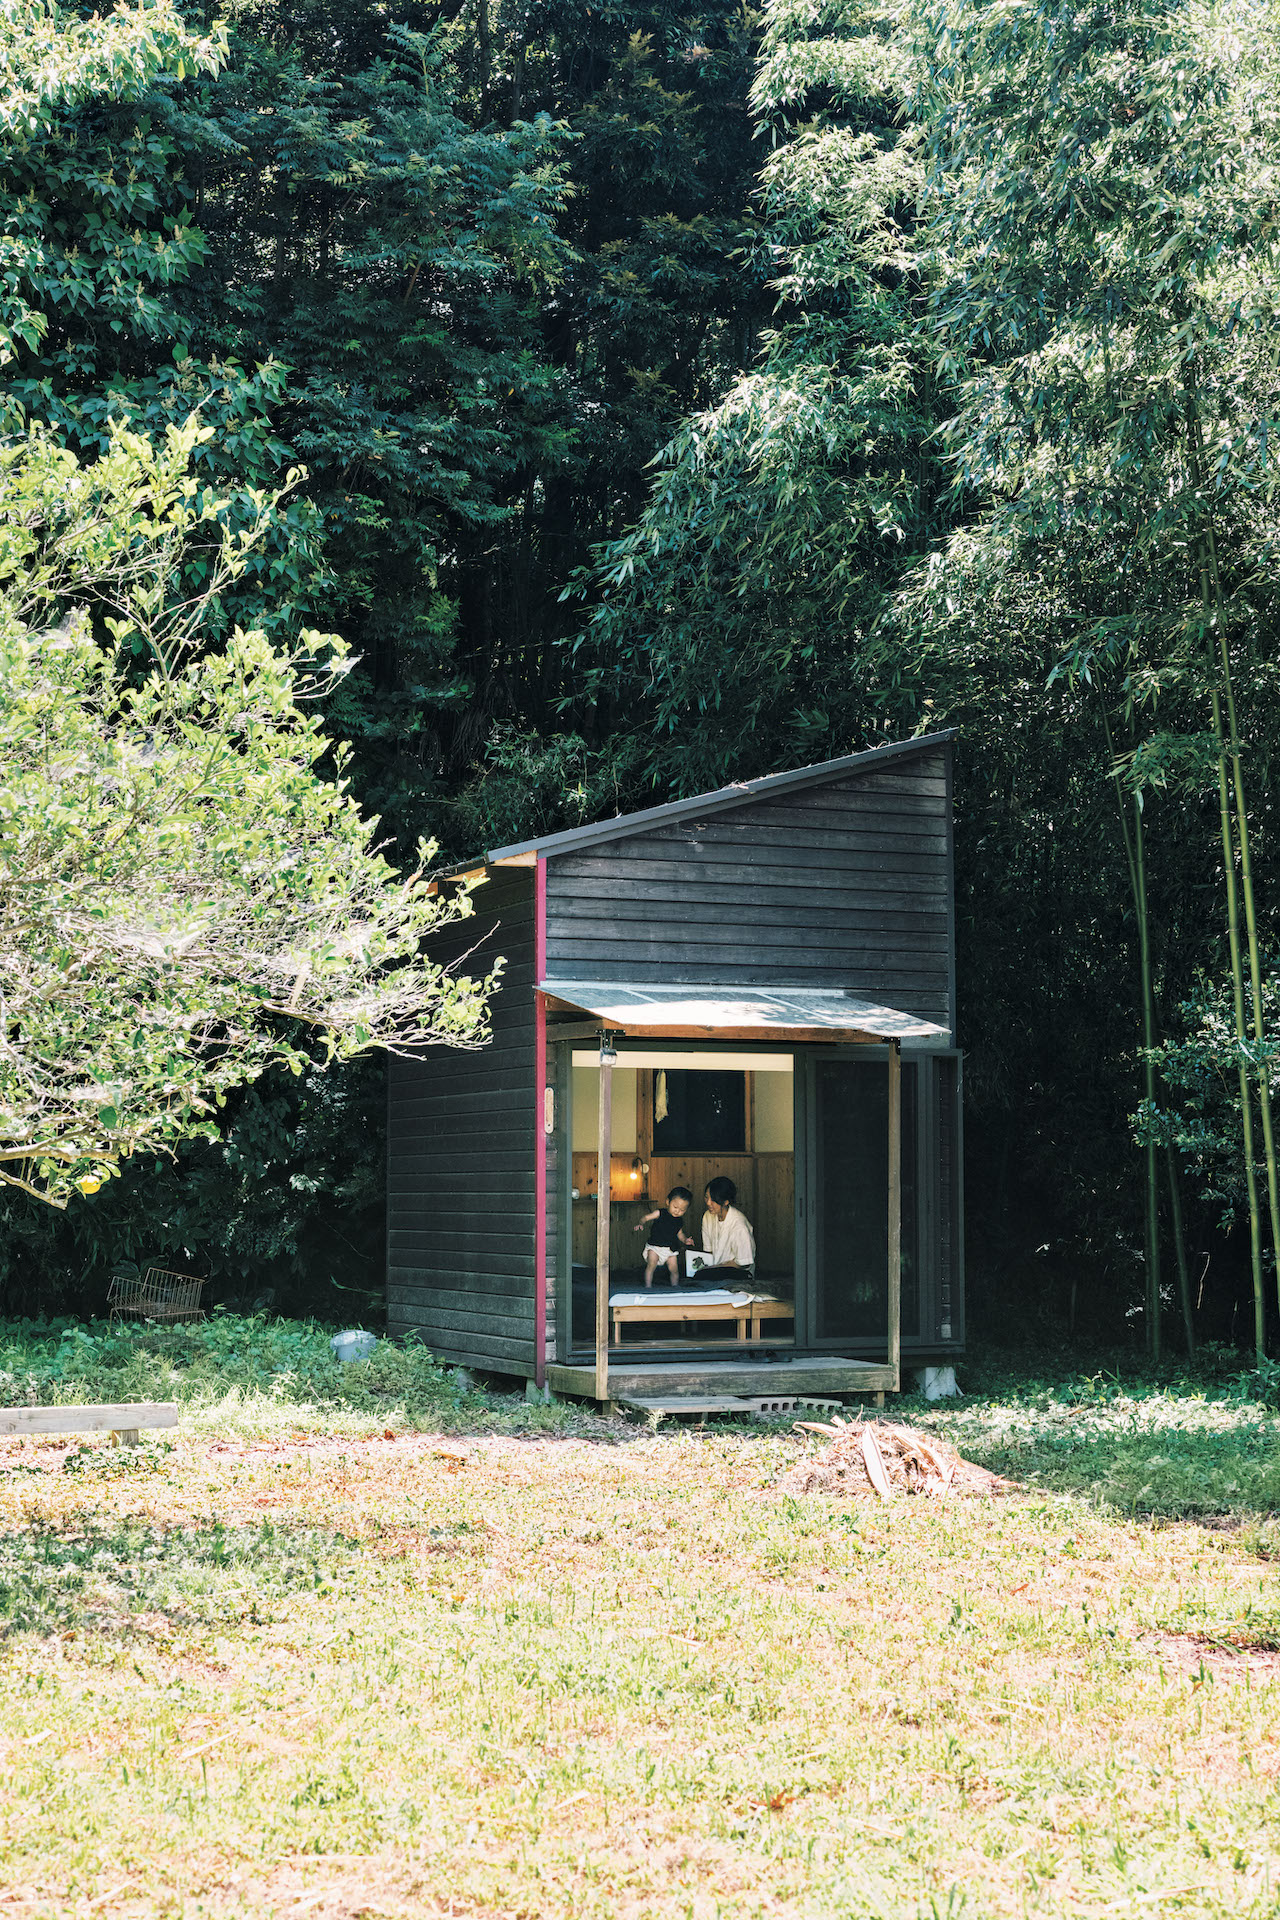 自作の小屋で、庭の自然に包まれ眠る。榎戸勇人さん、榎戸真生さんが実践する豊かな暮らし。